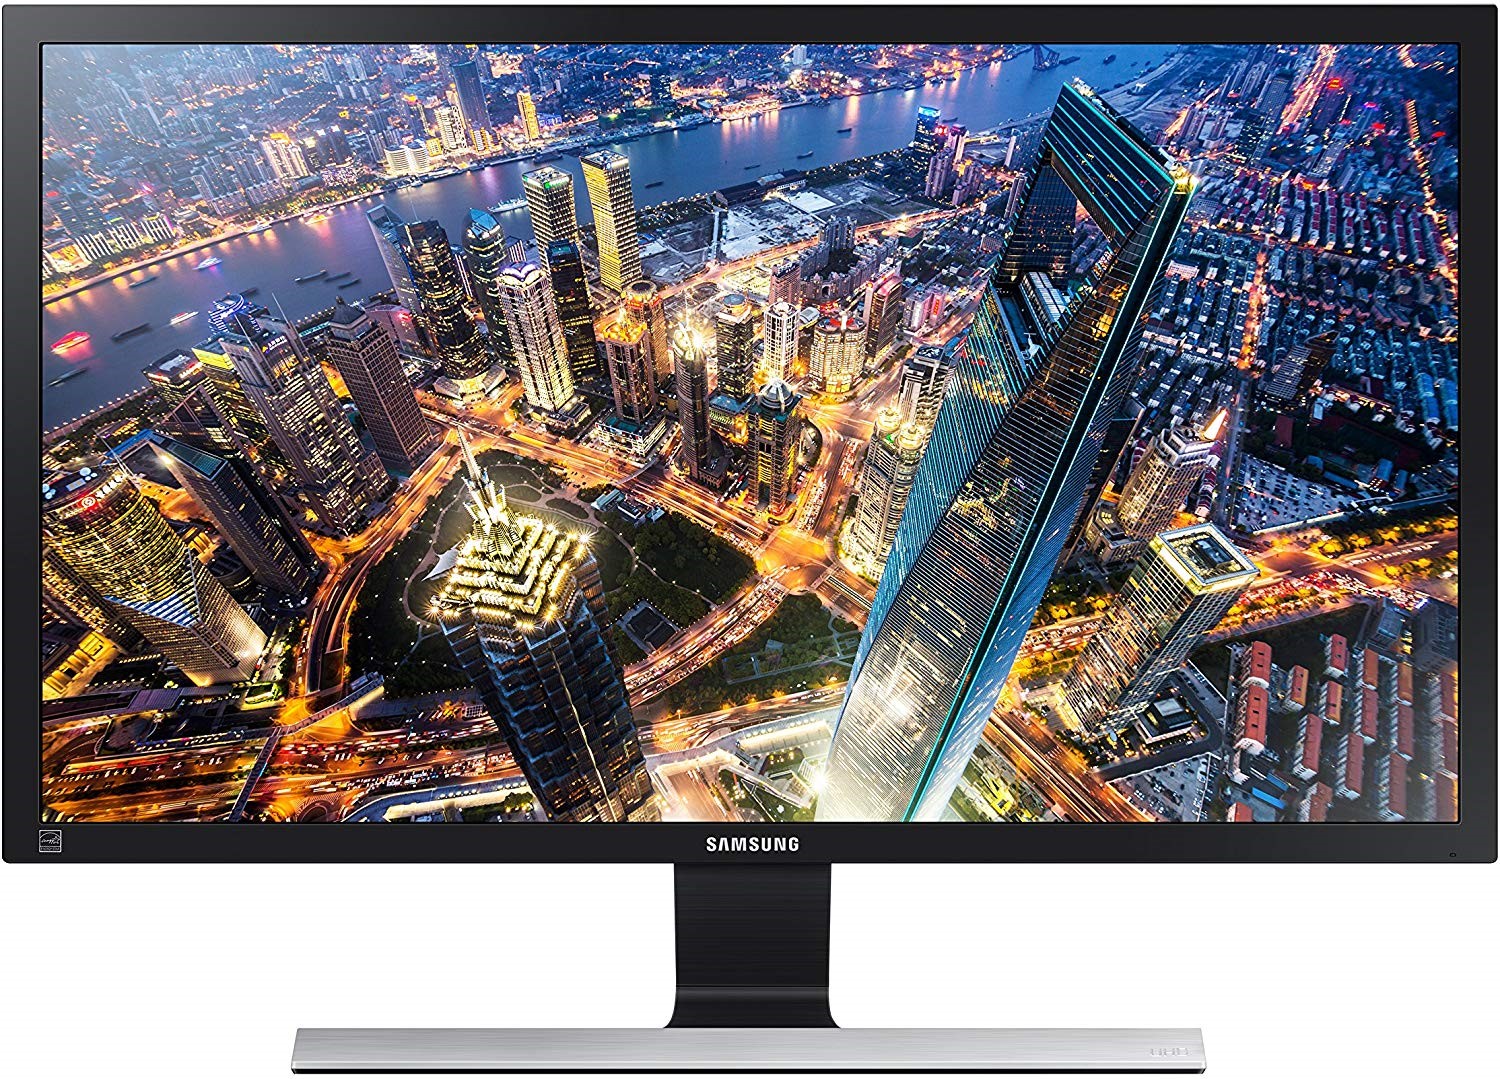 Samsung LU28E590DS - Najjeftiniji 4K monitor na tržištu - Recenzije @ Bug.hr